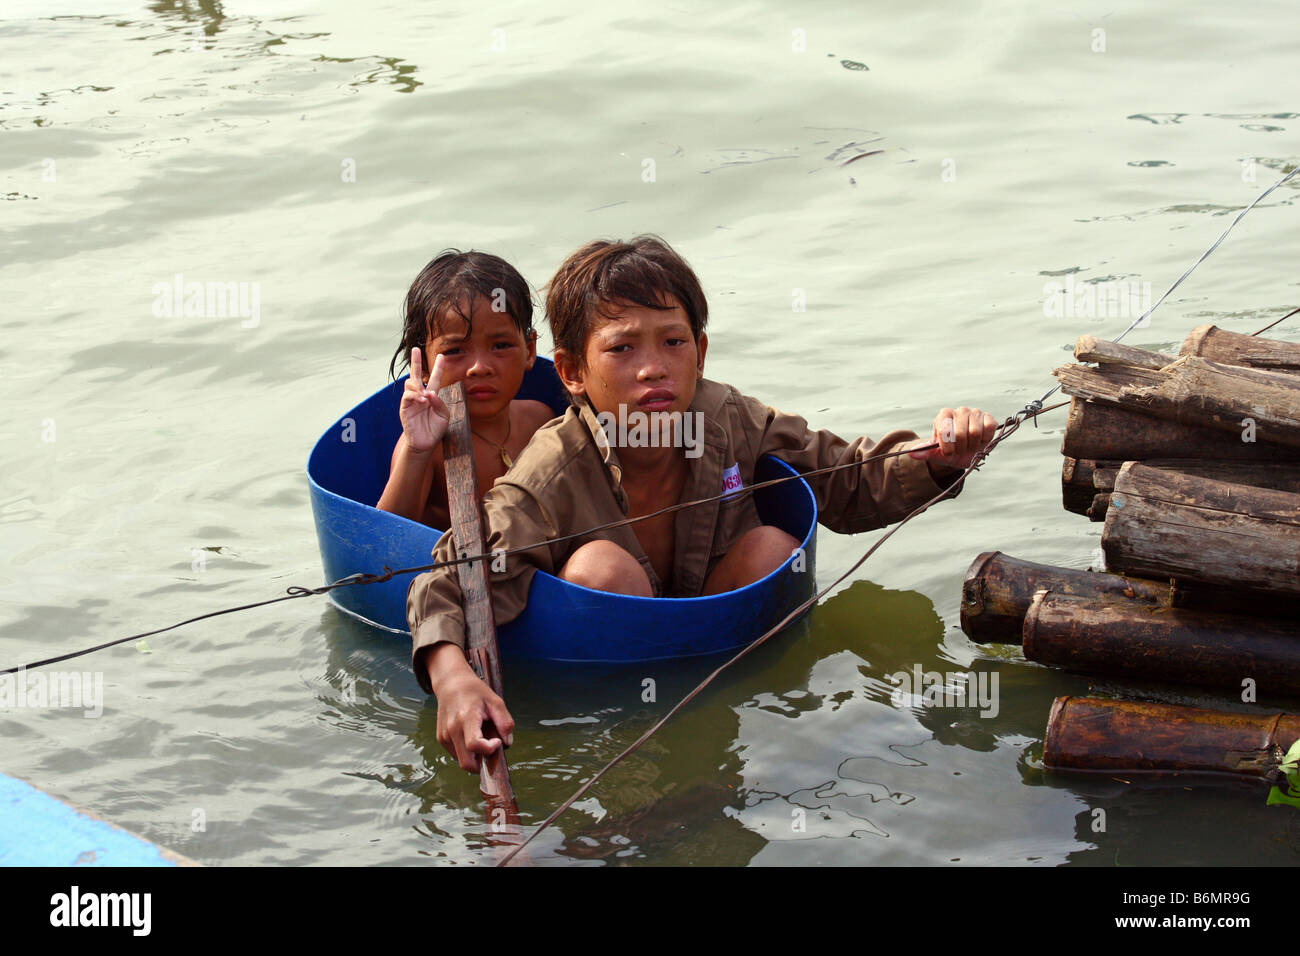 Junge Mädchen tun ein Siegeszeichen V und junge mit einer Schüssel als Boot in schwimmenden Dorf Chong Kneas, Tonlè-SAP-See, Kambodscha Stockfoto